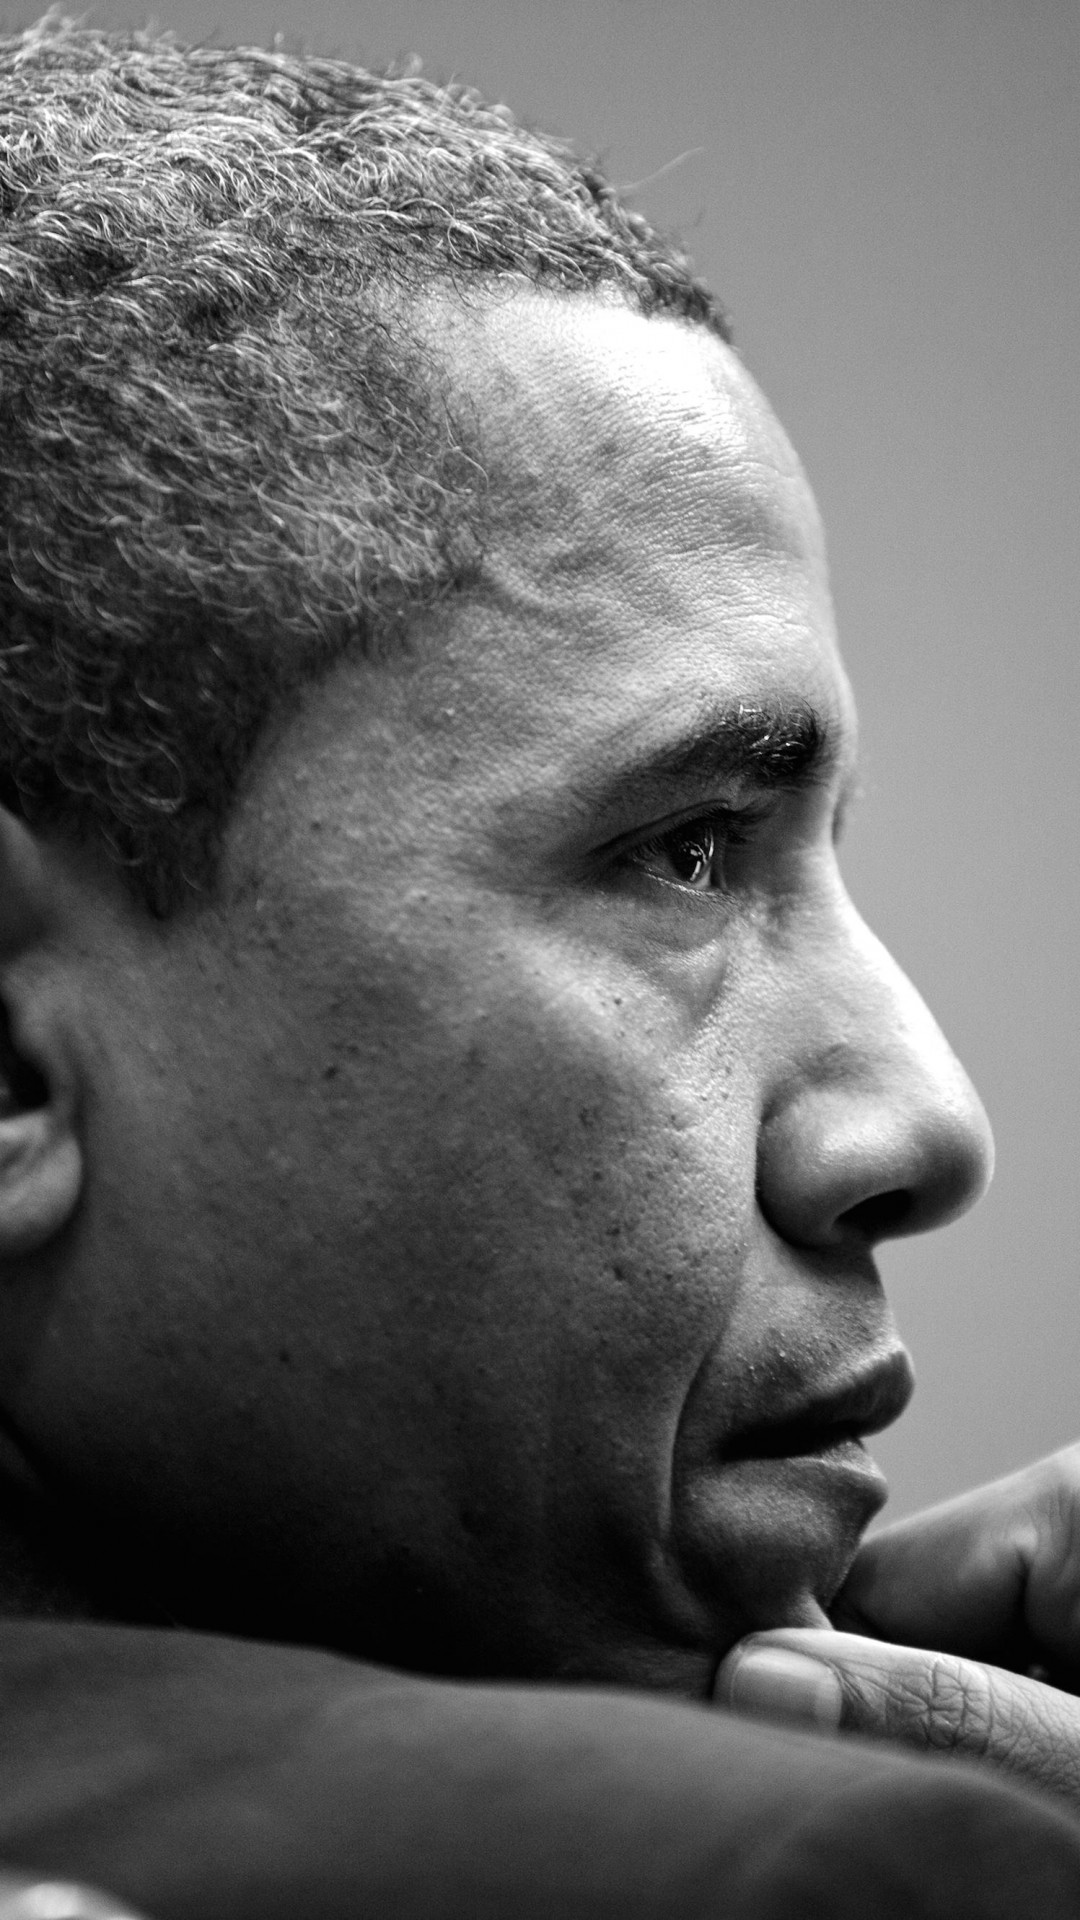 Barack Obama in Black & White Wallpaper for LG G2